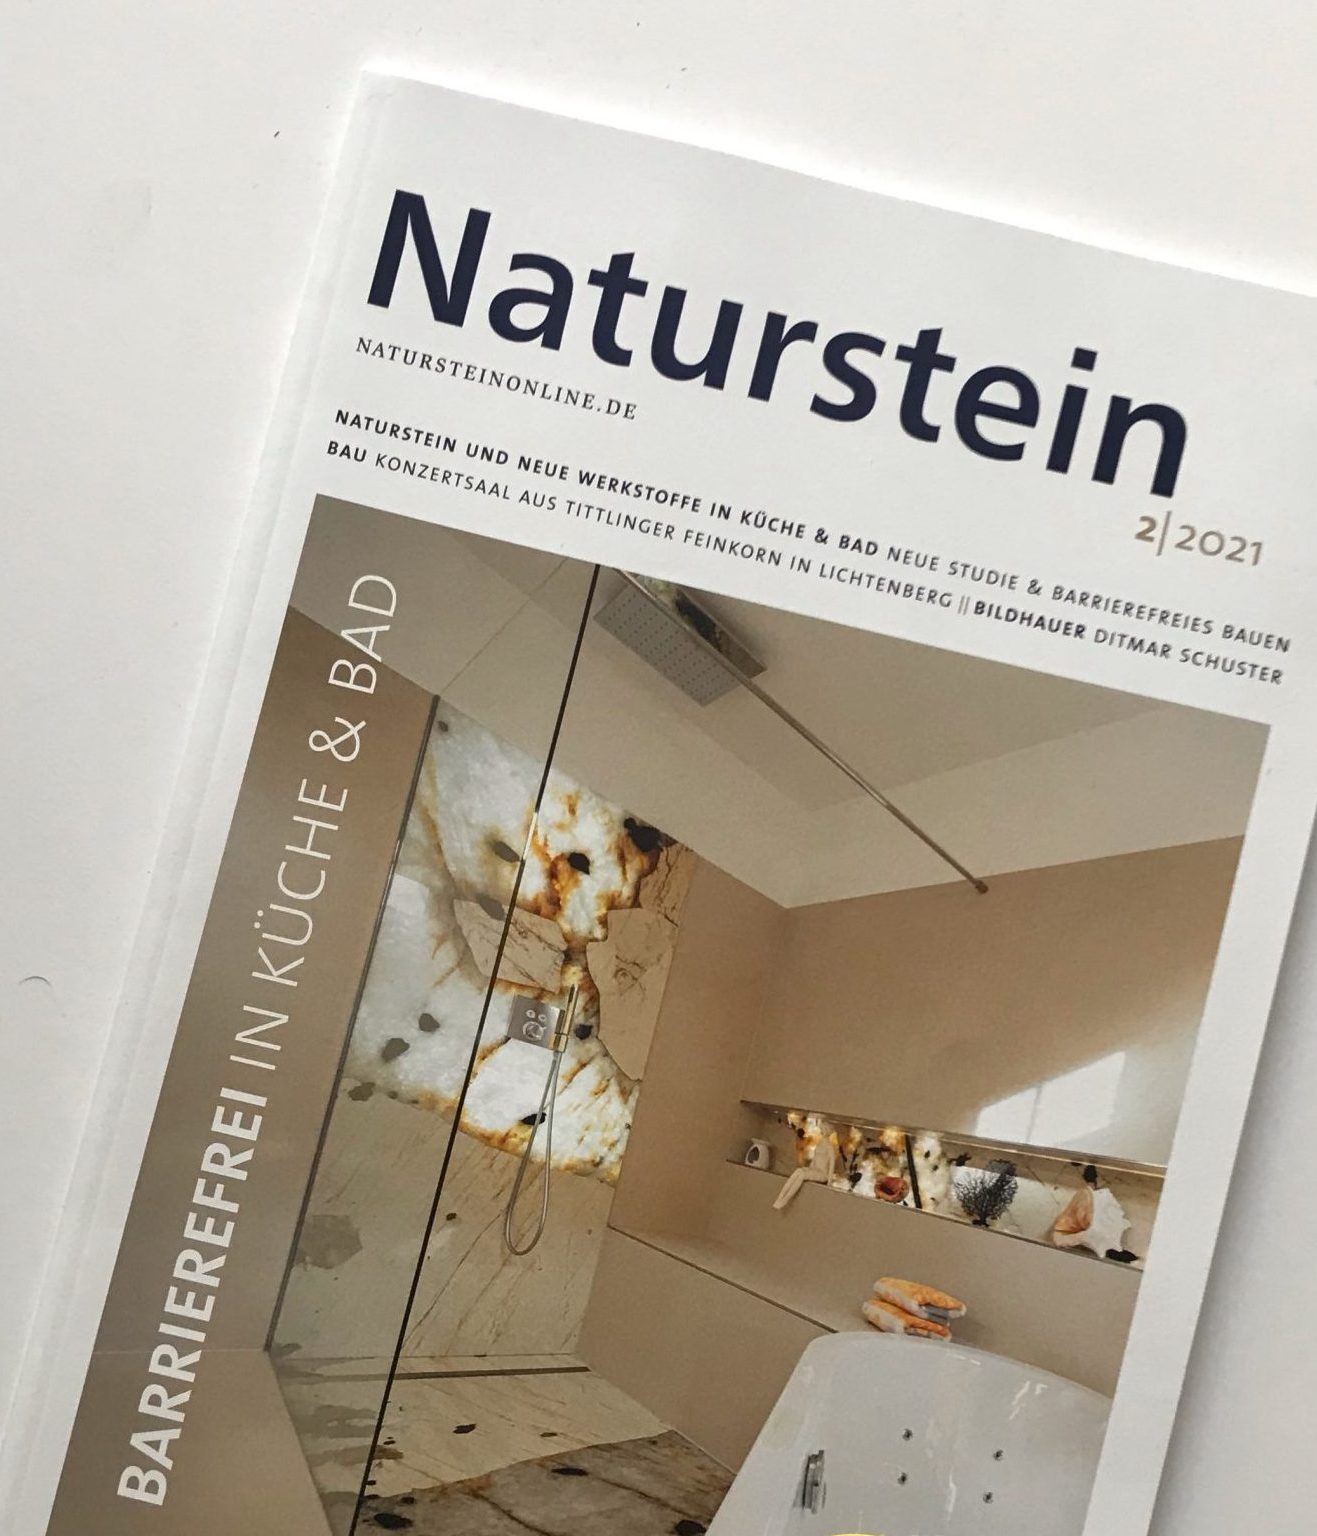 Titel der Zeitschrift Naturstein zeigt eine schwellenloses Dusche mit einer Lichtdurchleuchteten Fläche.